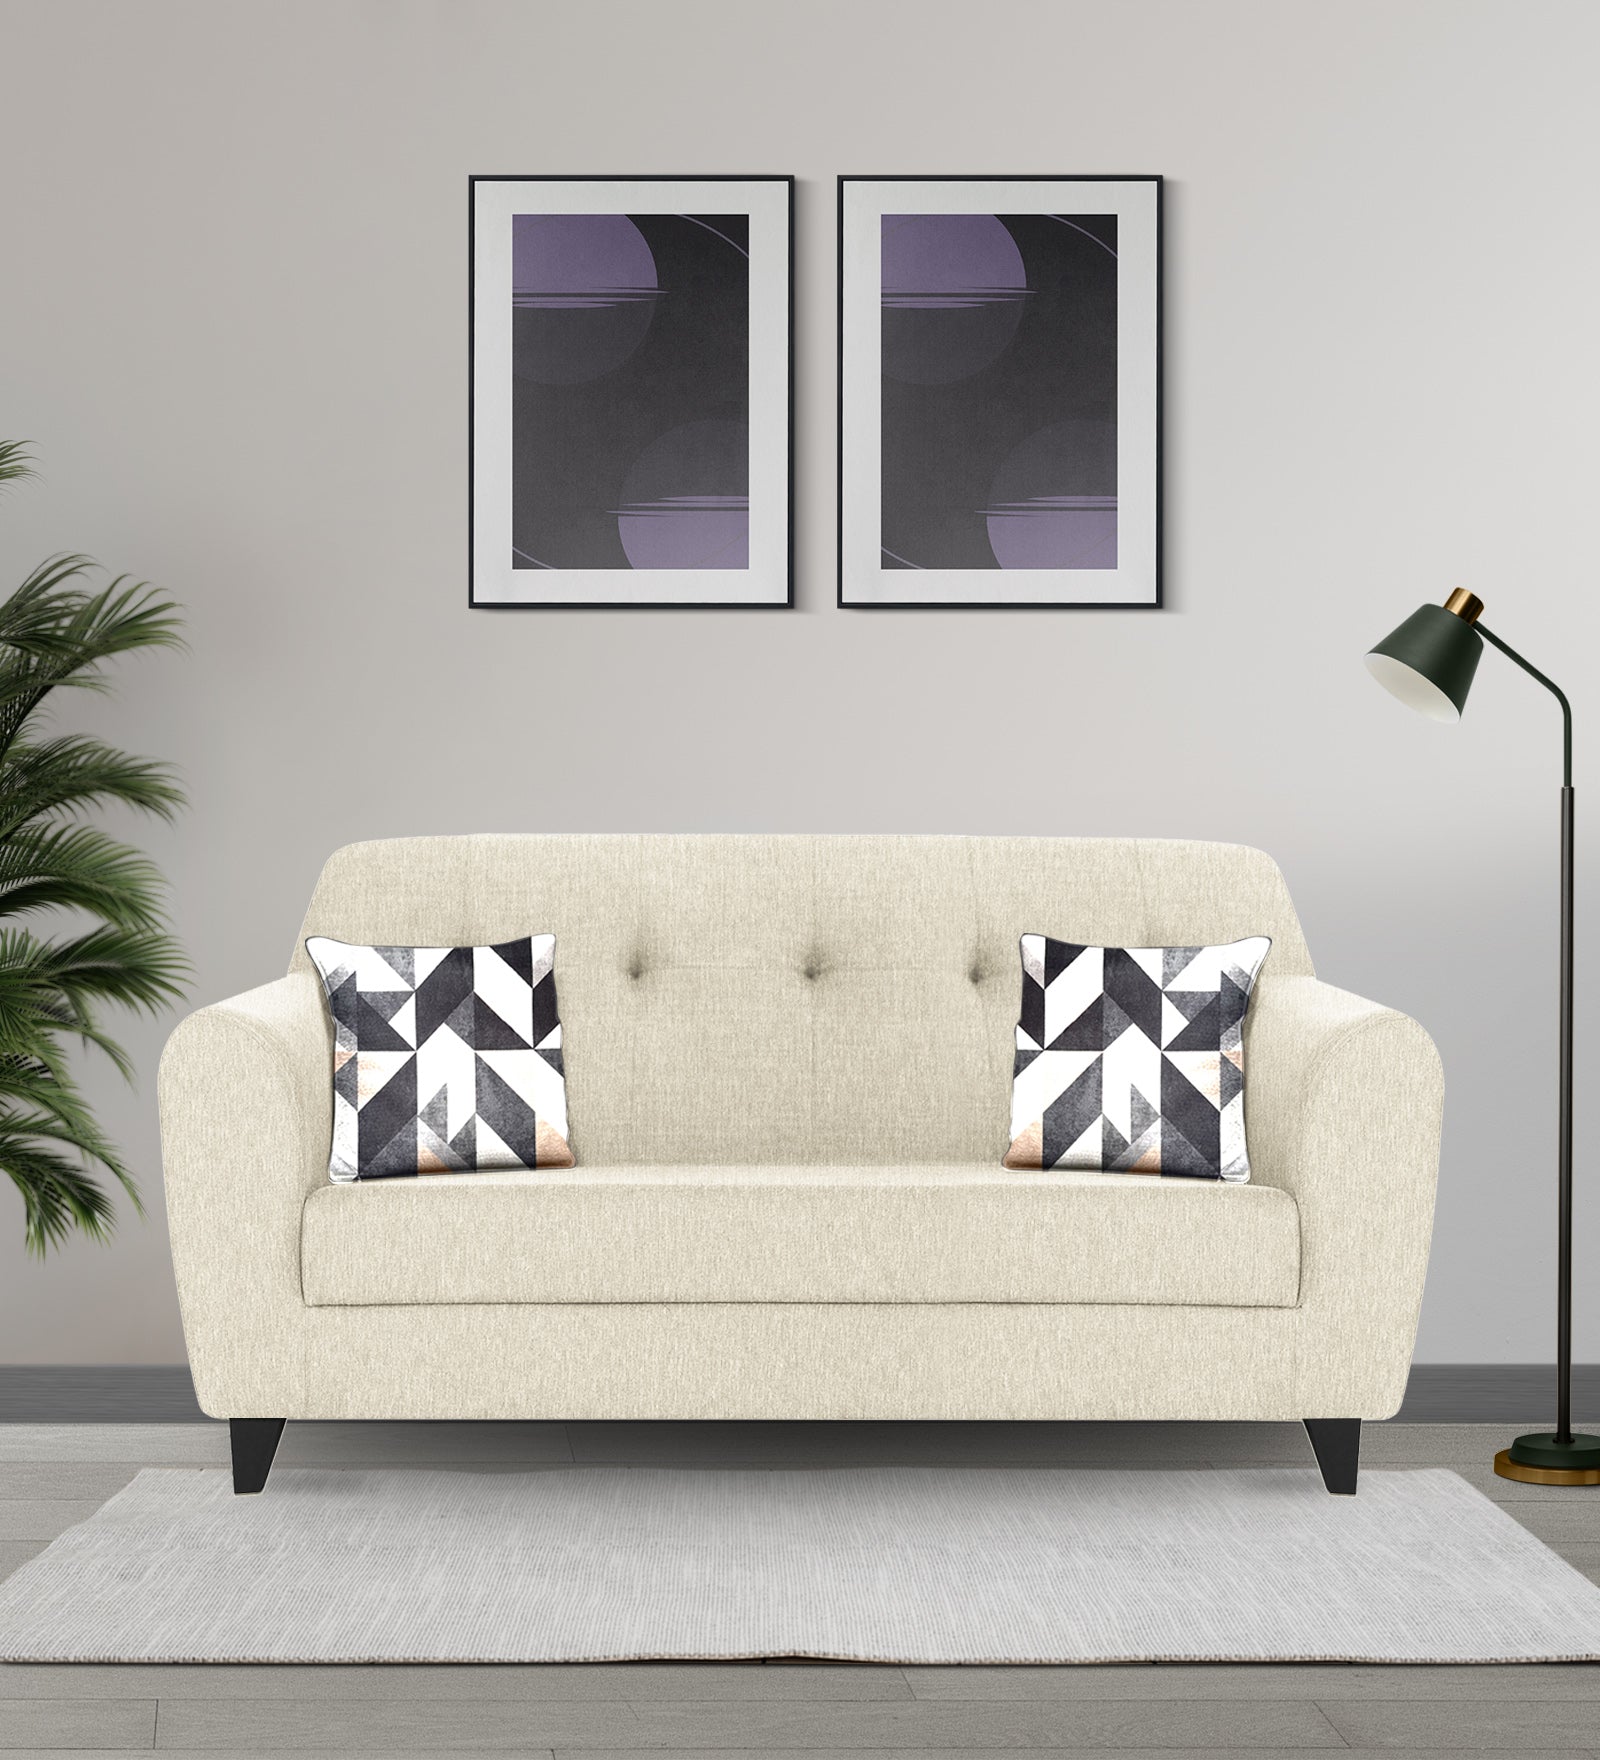 Melaan Fabric 2 Seater Sofa In Ivory cream Colour